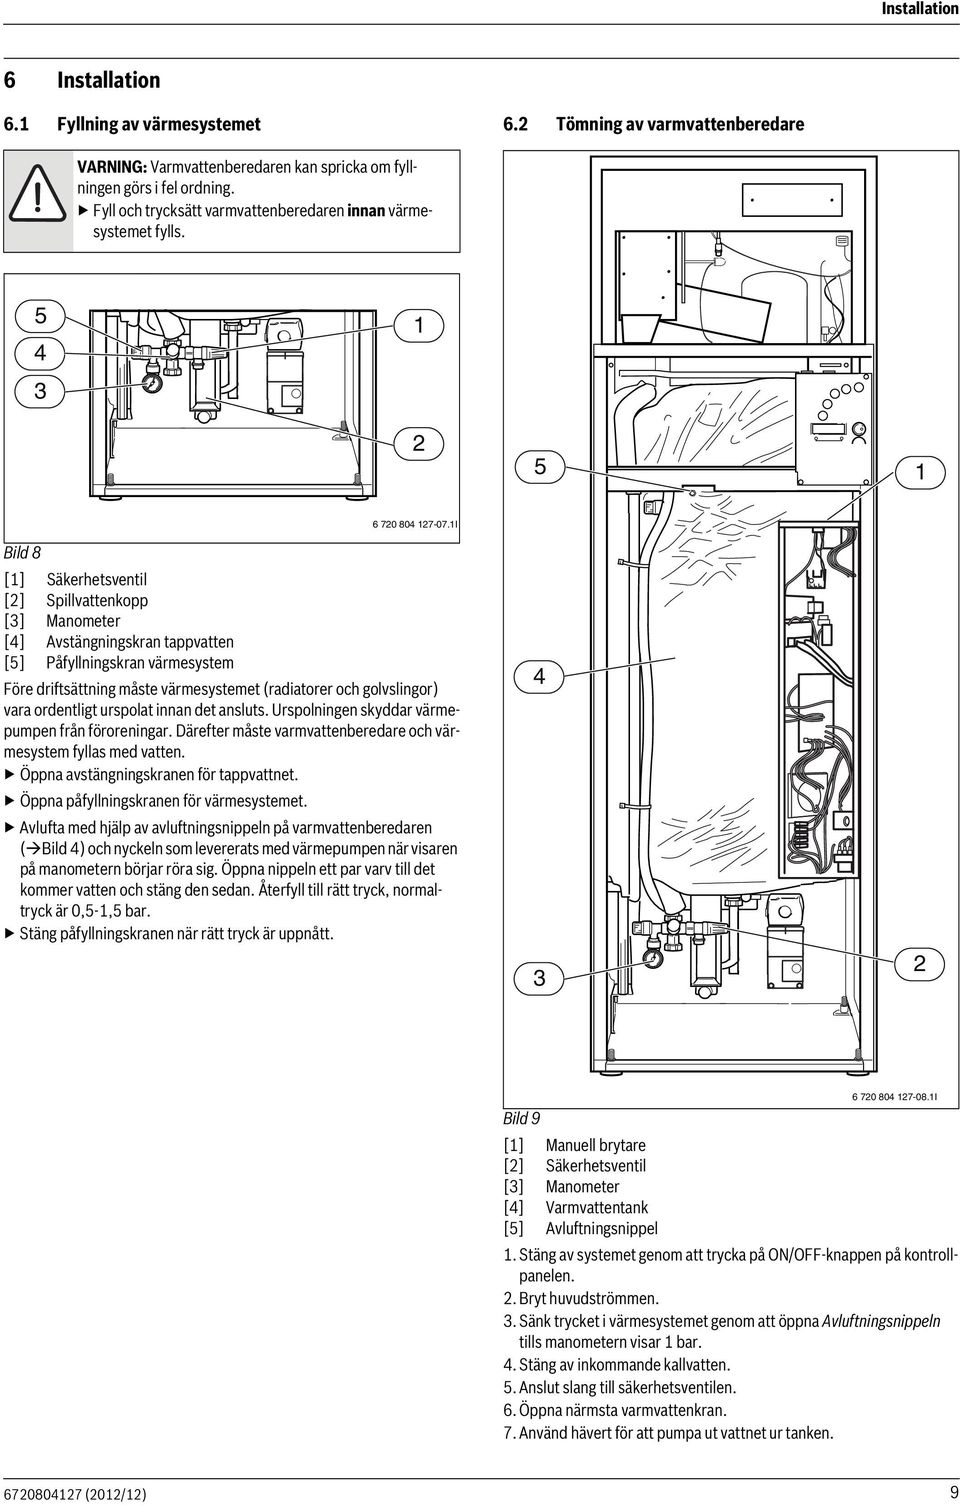 I Bild 8 [] Säkerhetsventil [] Spillvattenkopp [] Manometer [4] Avstängningskran tappvatten [5] Påfyllningskran värmesystem Före driftsättning måste värmesystemet (radiatorer och golvslingor) vara